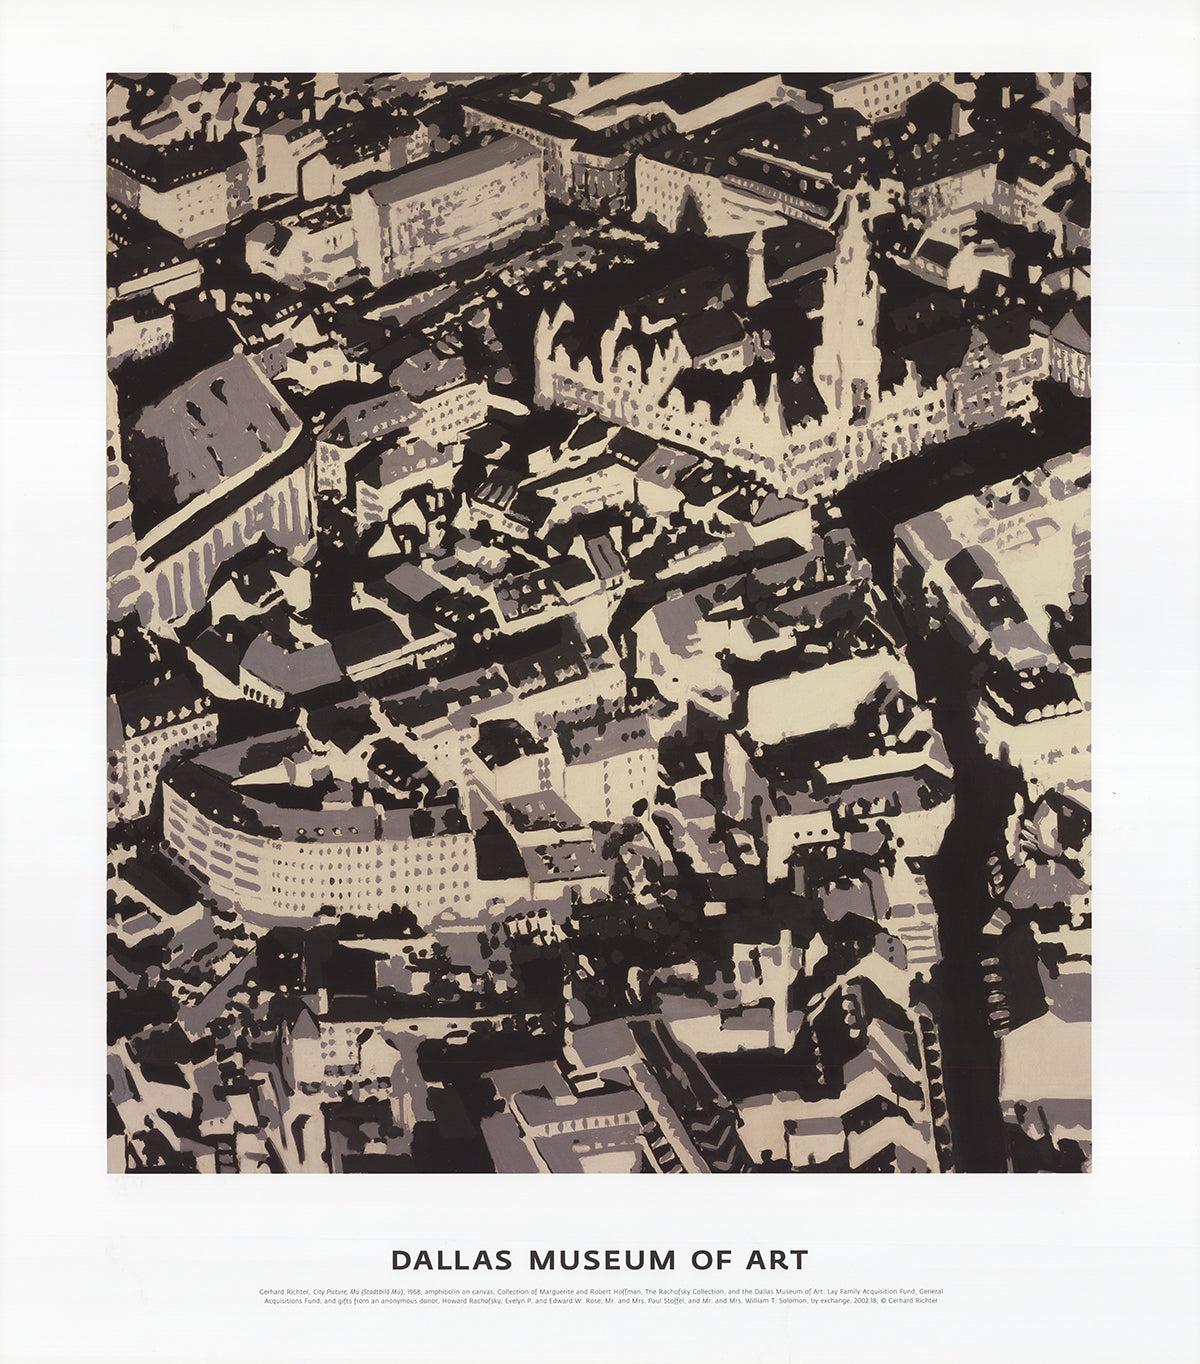 Formato carta: 27,5 x 24 pollici ( 69,85 x 60,96 cm )
Dimensioni dell'immagine: 21,25 x 19,5 pollici ( 53,975 x 49,53 cm )
Incorniciato: No
Condizioni: A: Menta

Ulteriori dettagli: Poster originale di una mostra del Dallas Museum of Art con